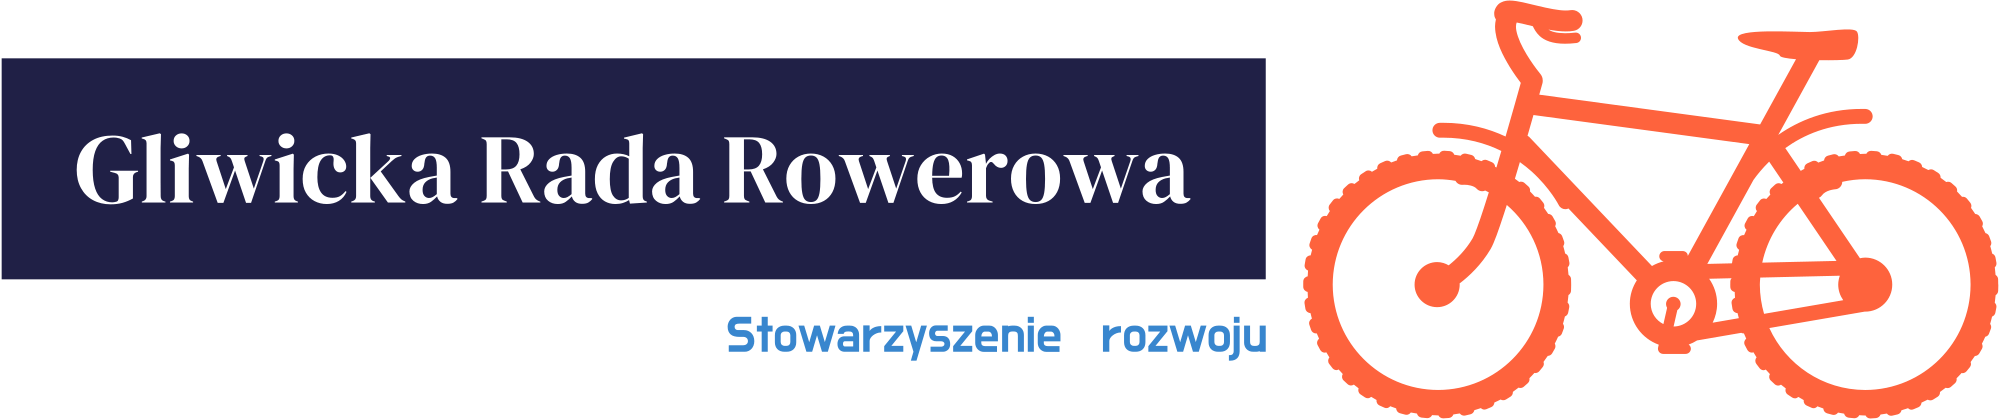 Gliwicka Rada Rowerowa – Stowarzyszenie działające na rzecz rozwoju ruchu rowerowego w Gliwicach i powiecie gliwickim